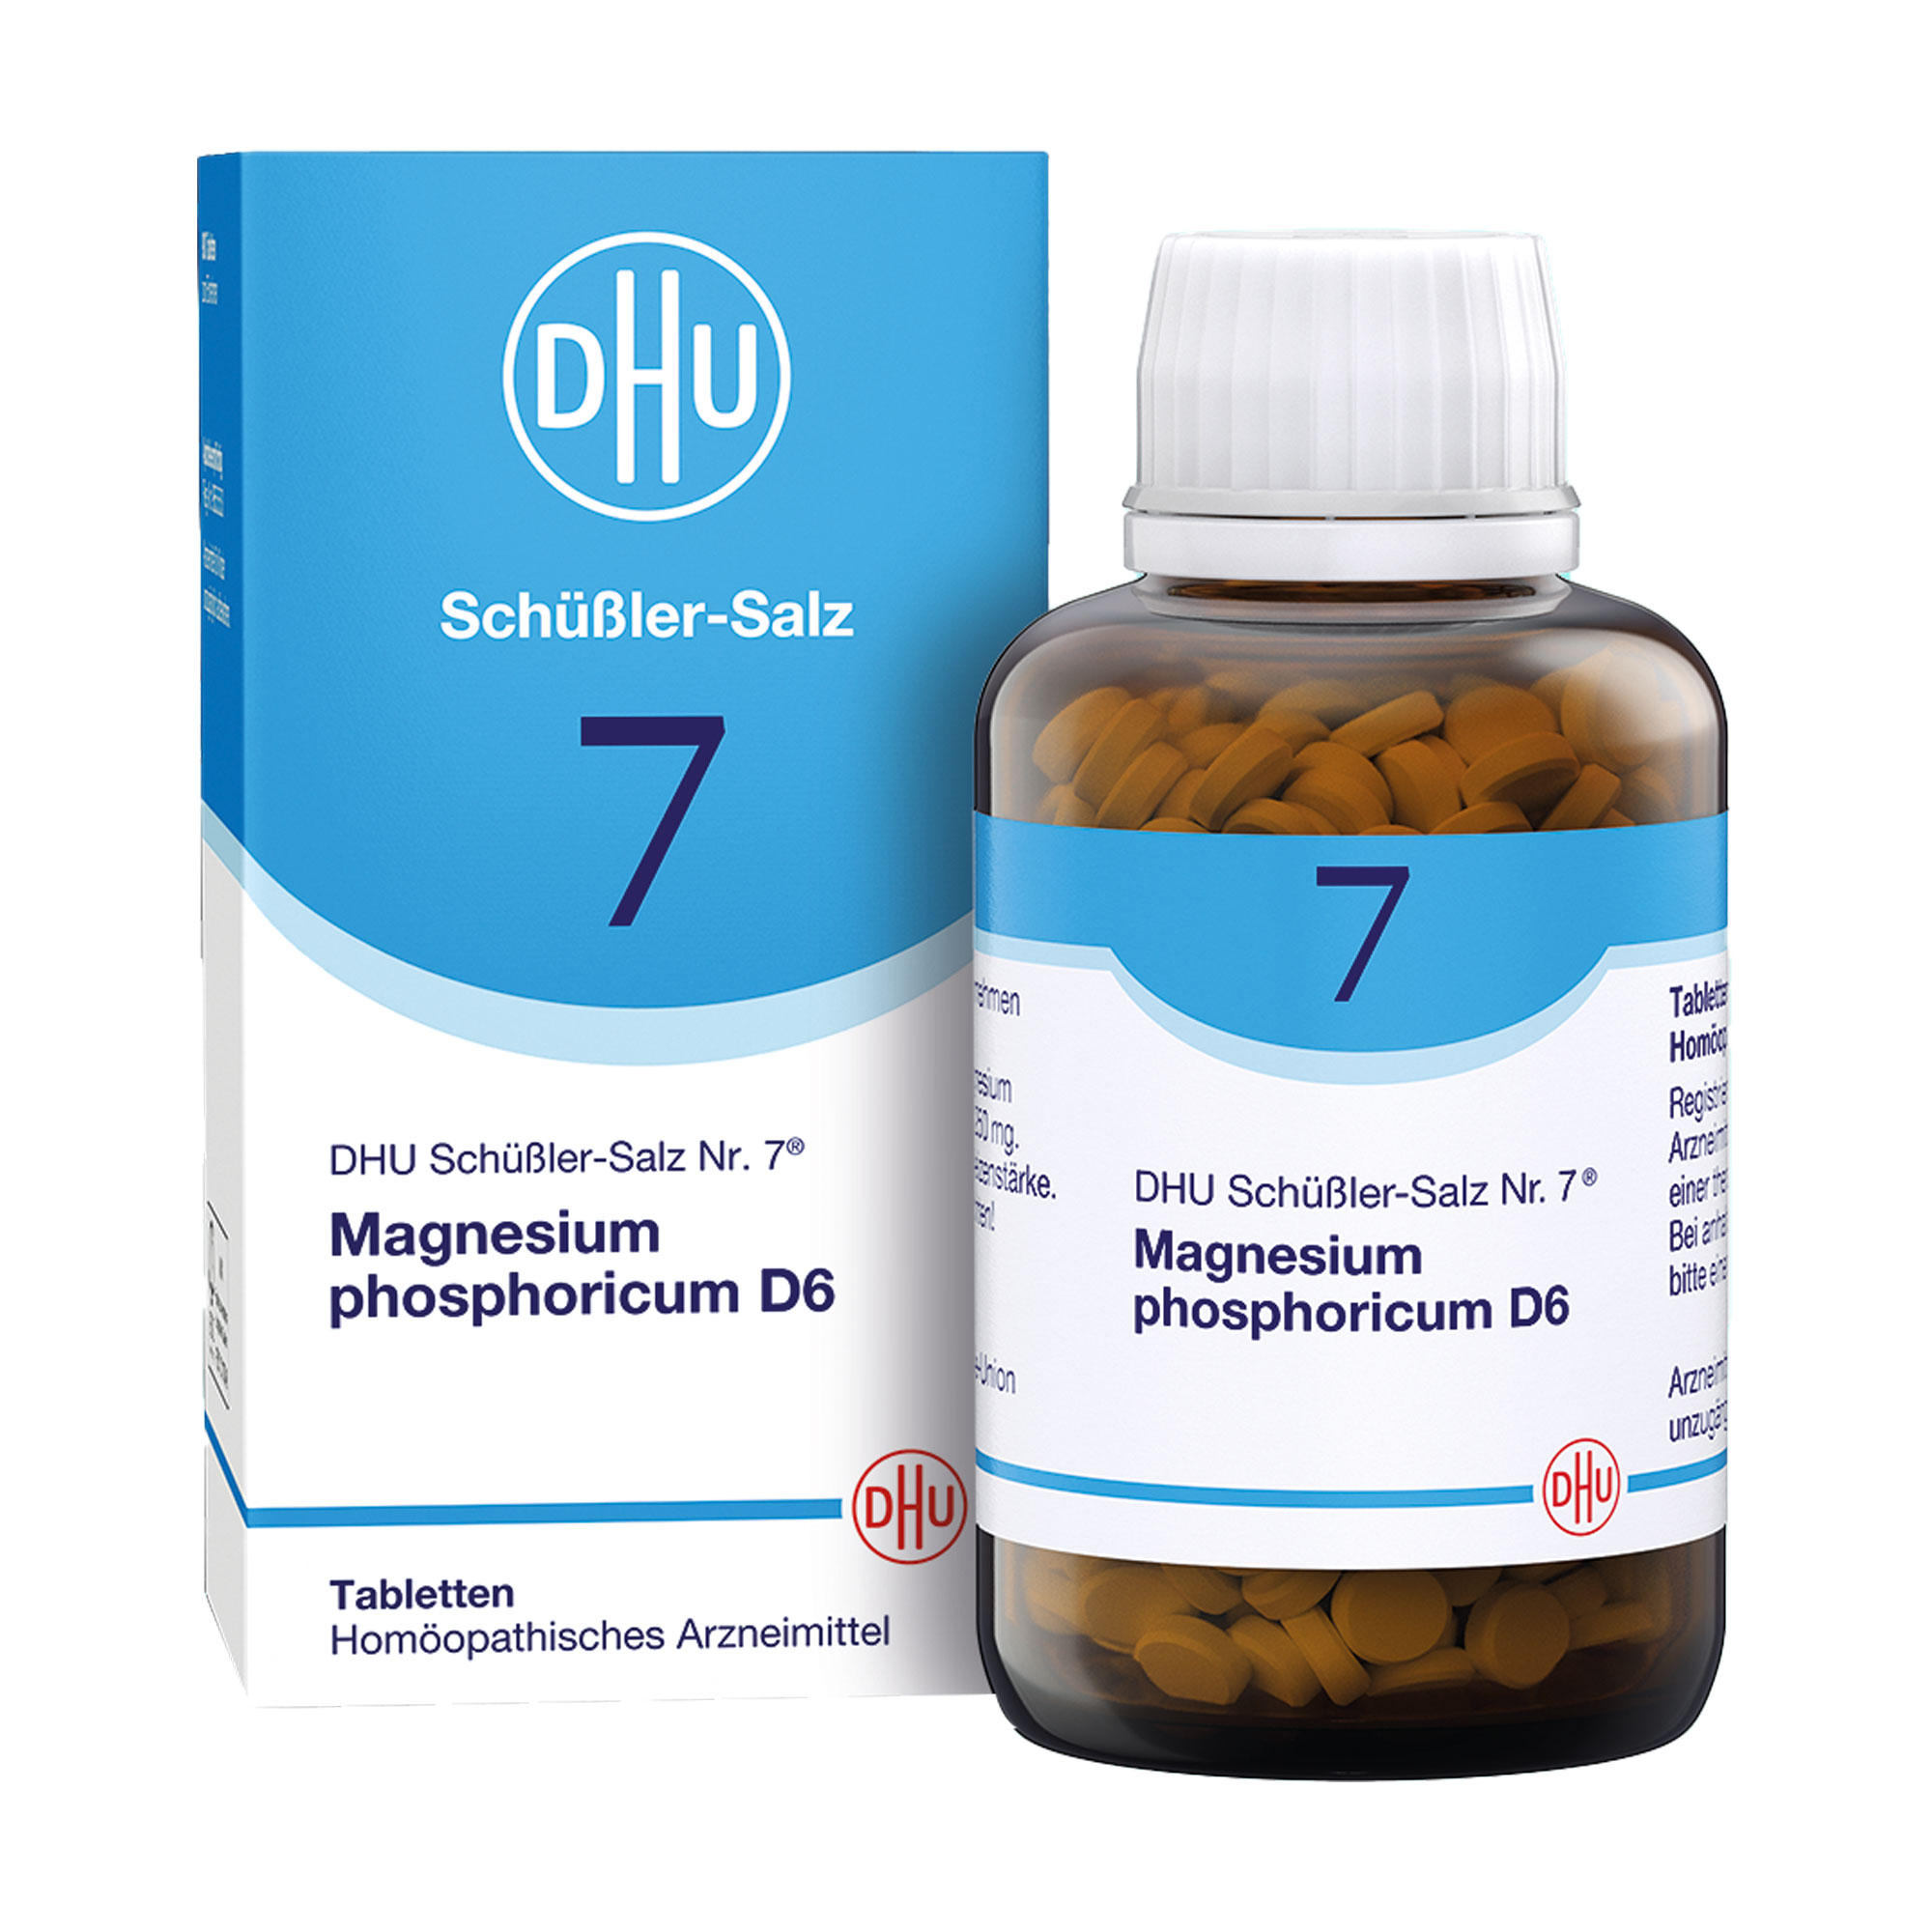 Homöopathisches Arzneimittel mit Magnesium phosphoricum Trit. D6.